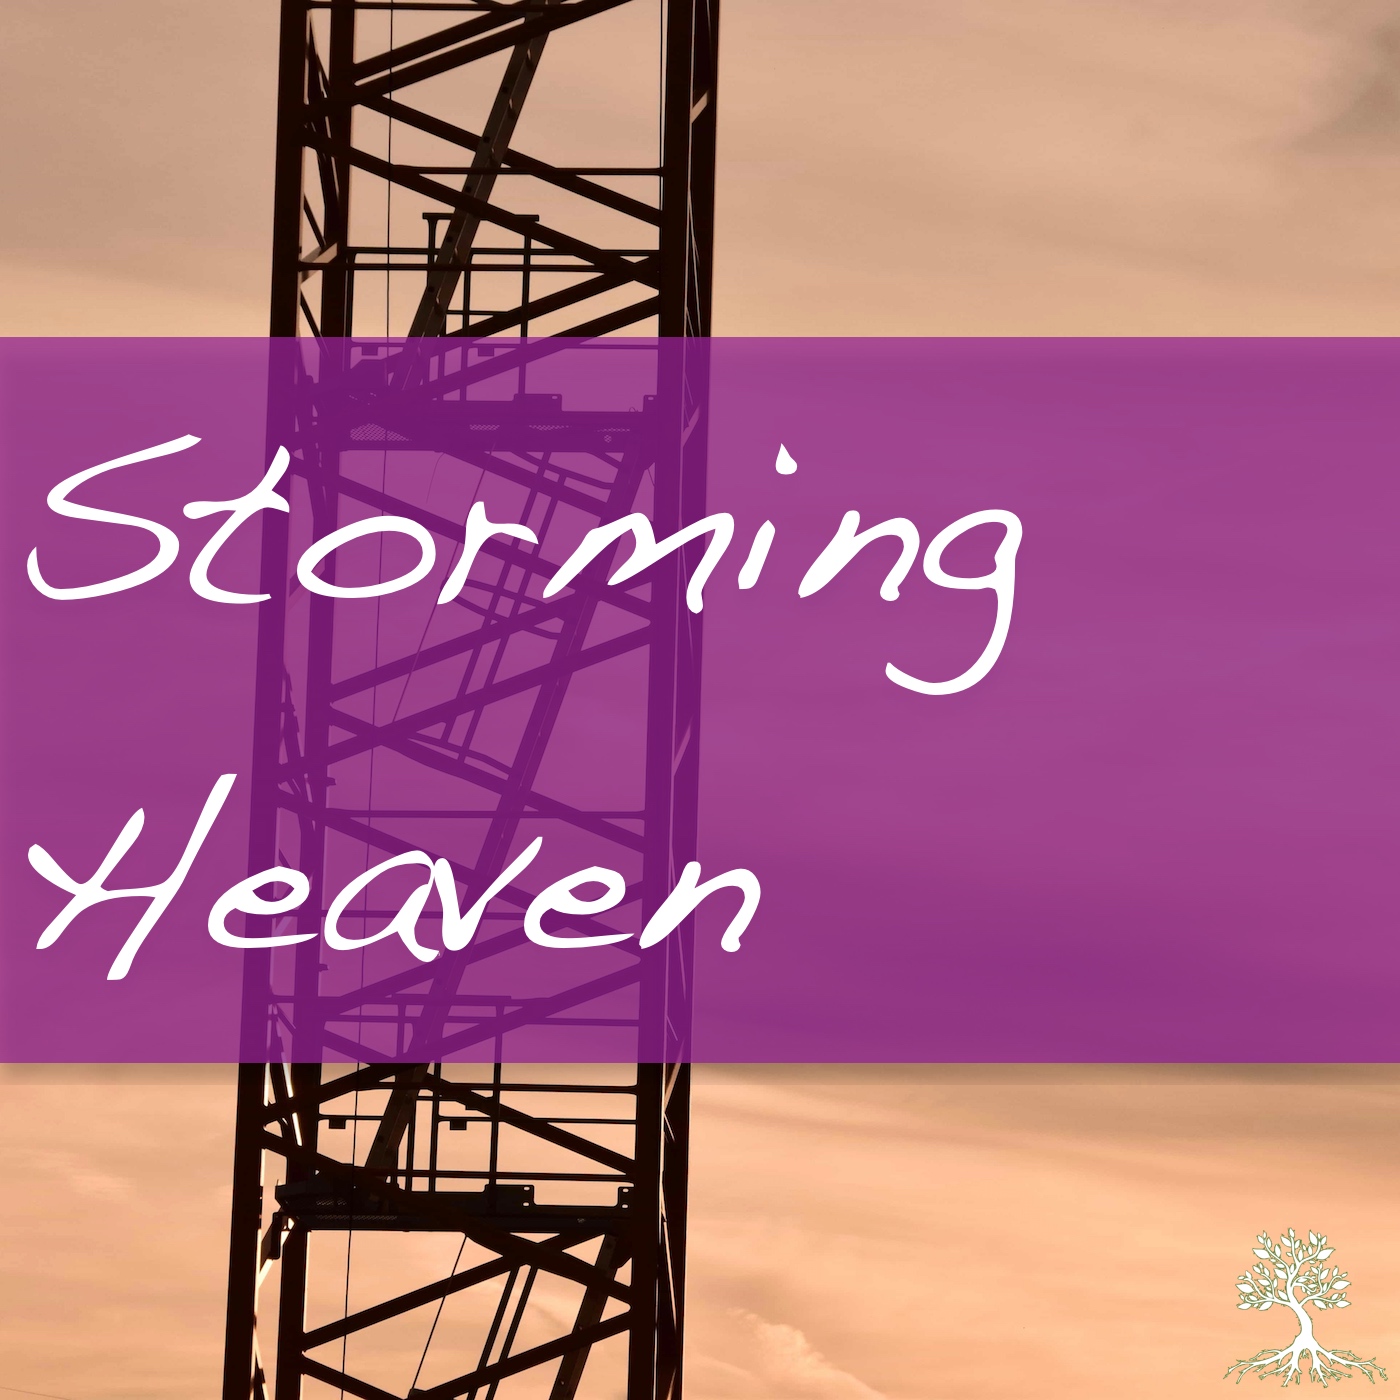 Storming Heaven (Chad Brekke 6/10/18)